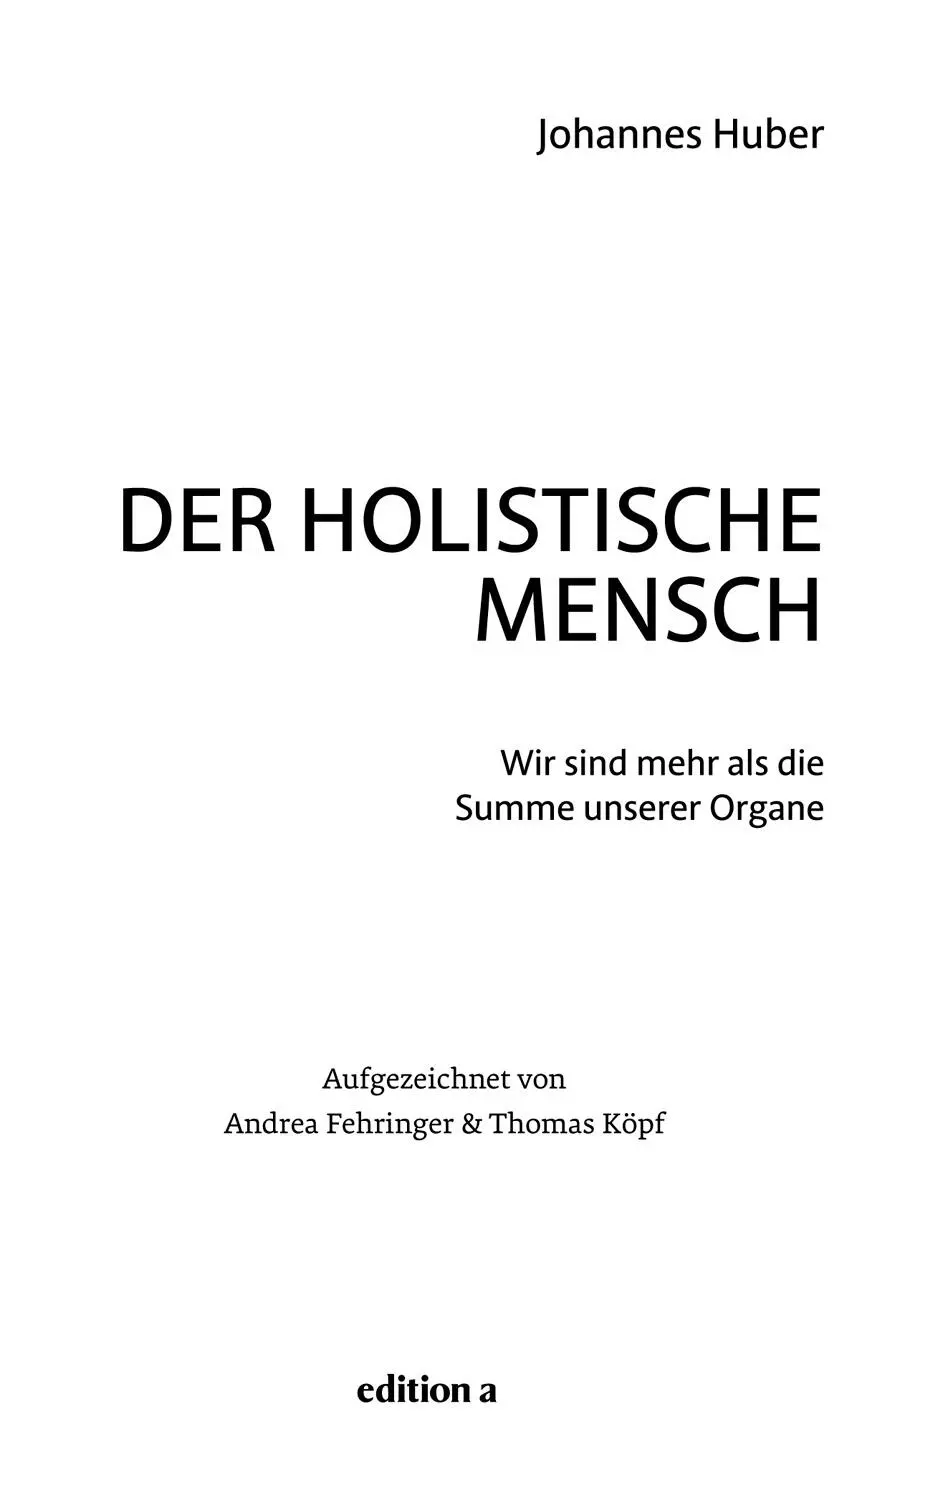 Johannes Huber Der holistische Mensch Alle Rechte vorbehalten 2017 edition - фото 1